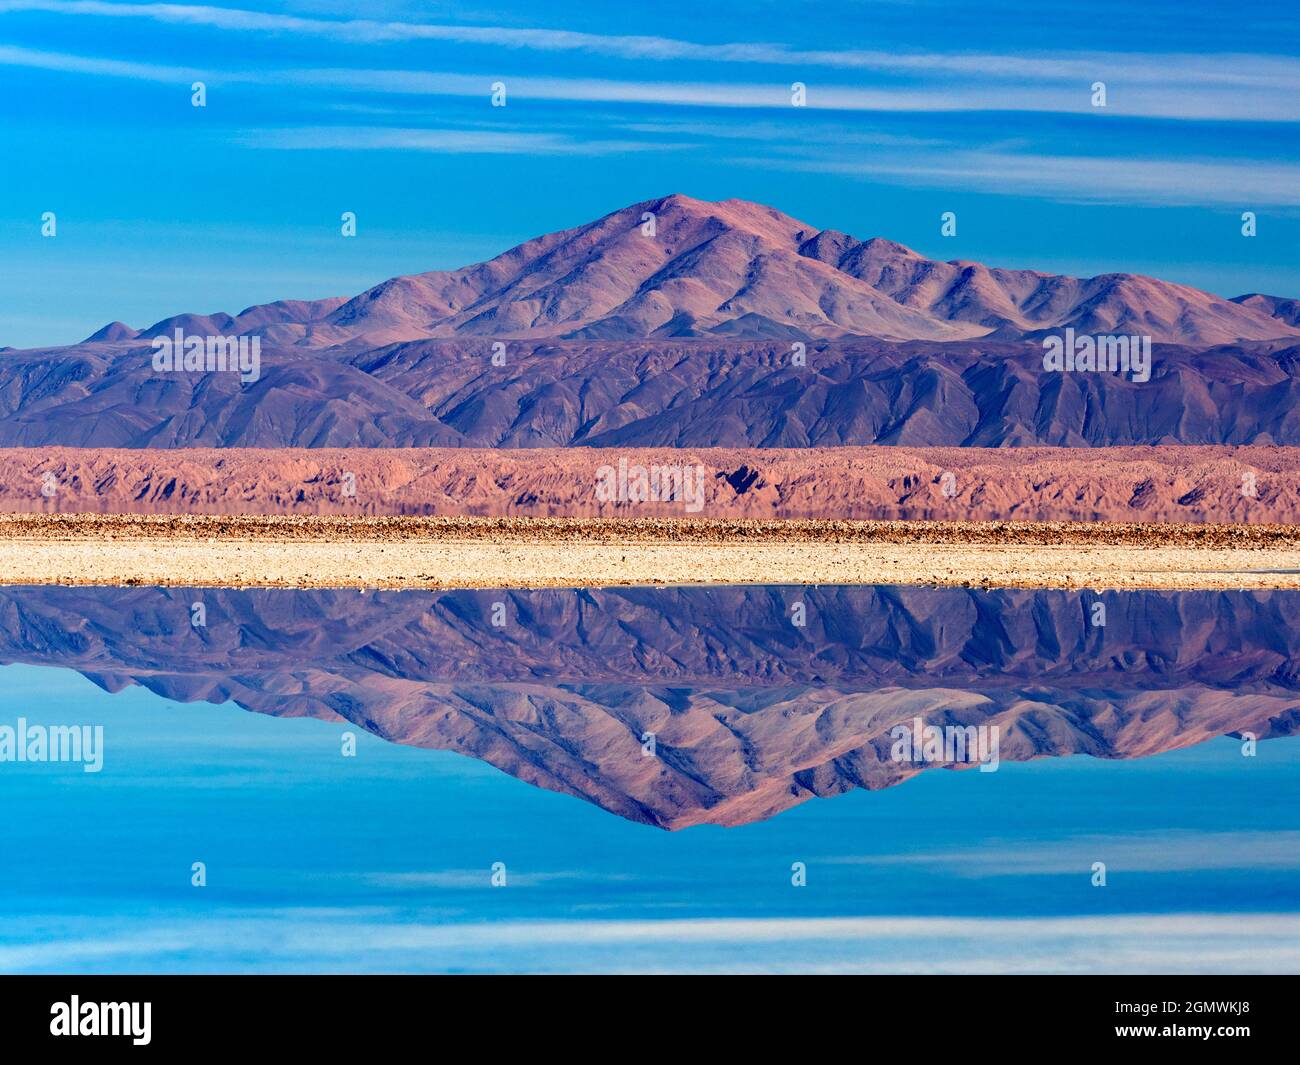 Salar de Atacama, Chile - 27 de mayo de 2018; Salar de Atacama, el salar más grande de Chile, cubre más de 3.000 kilómetros cuadrados, convirtiéndolos en uno de los Foto de stock